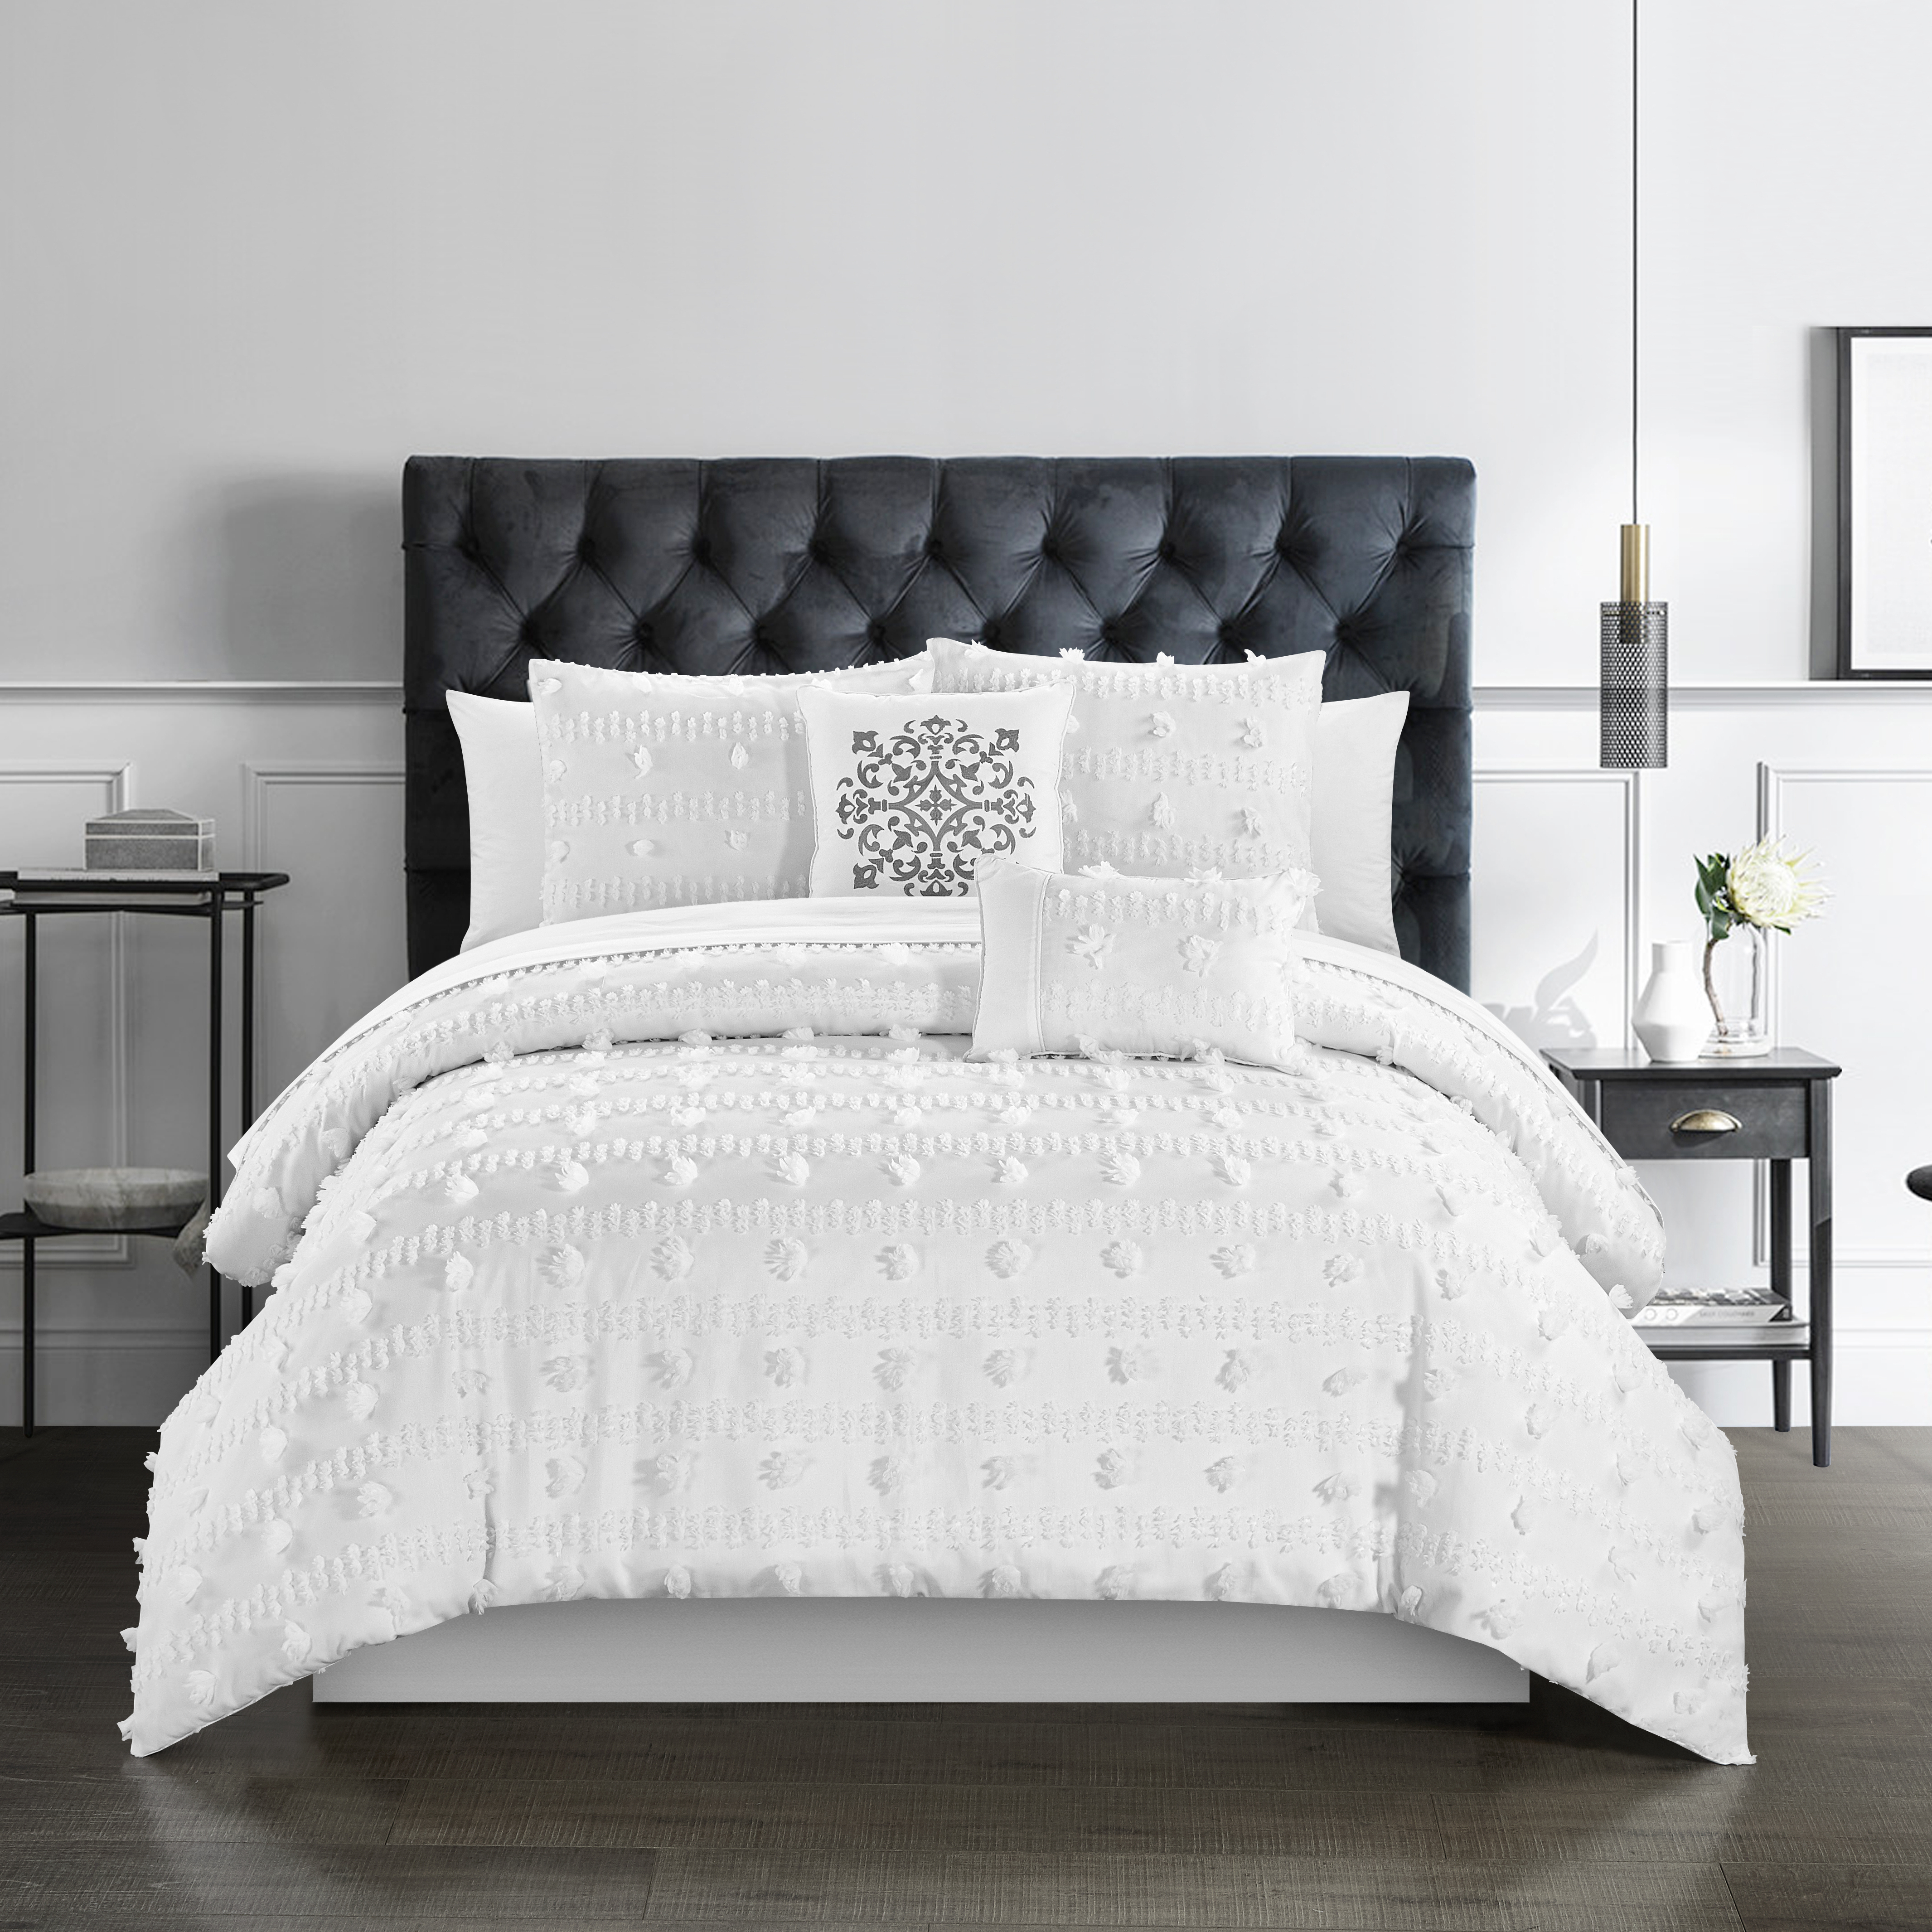 Ahtisa 5 Piece Comforter Set Jacquard Floral Applique Design Bedding - Sand, King